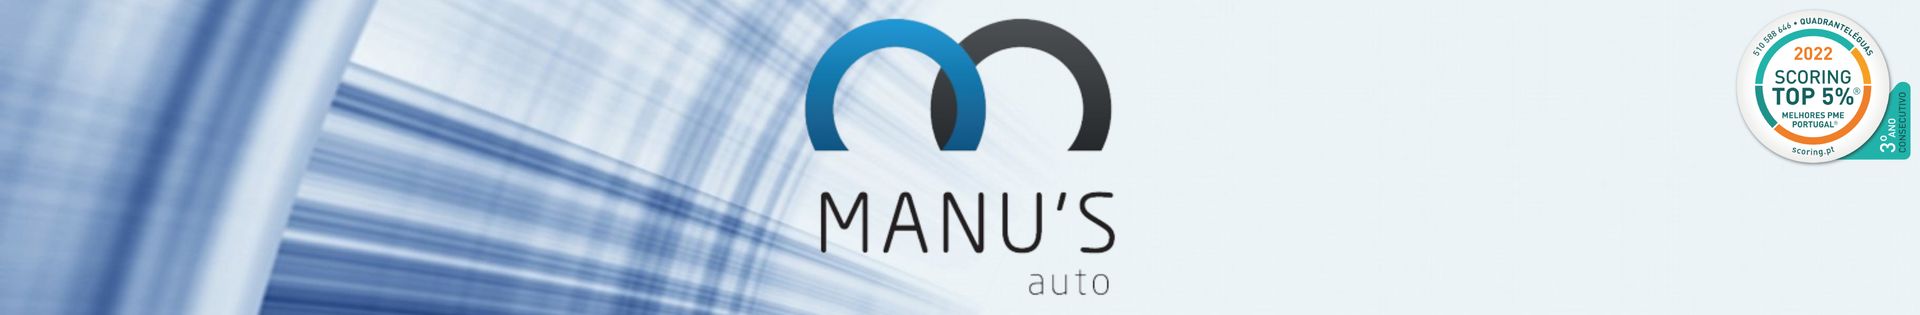 Manus Auto top banner